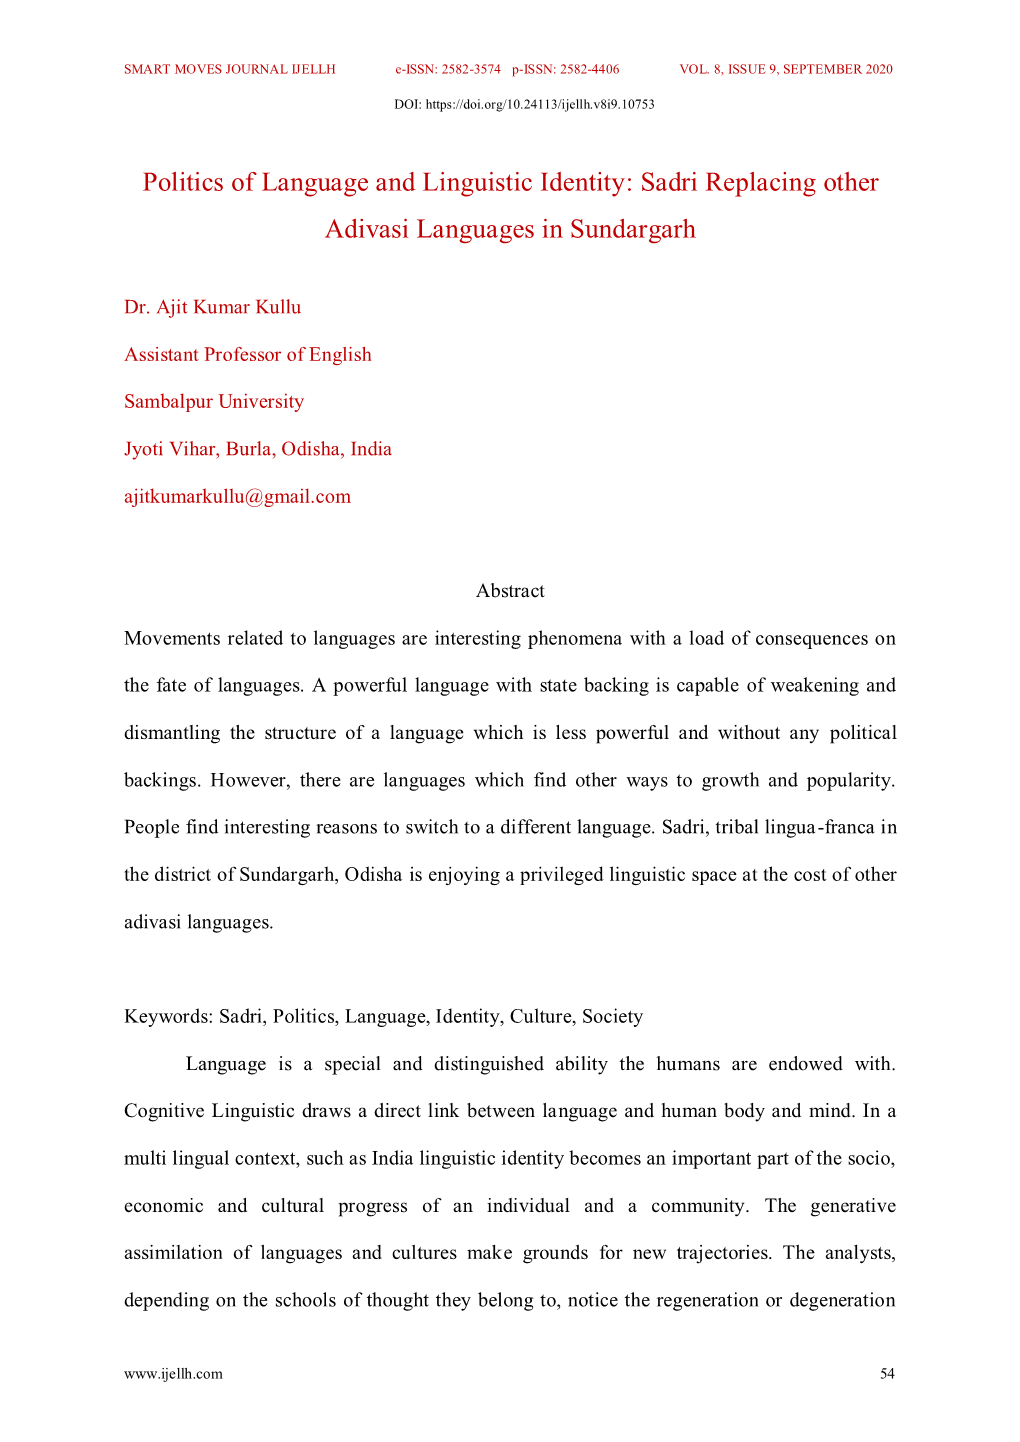 Sadri Replacing Other Adivasi Languages in Sundargarh